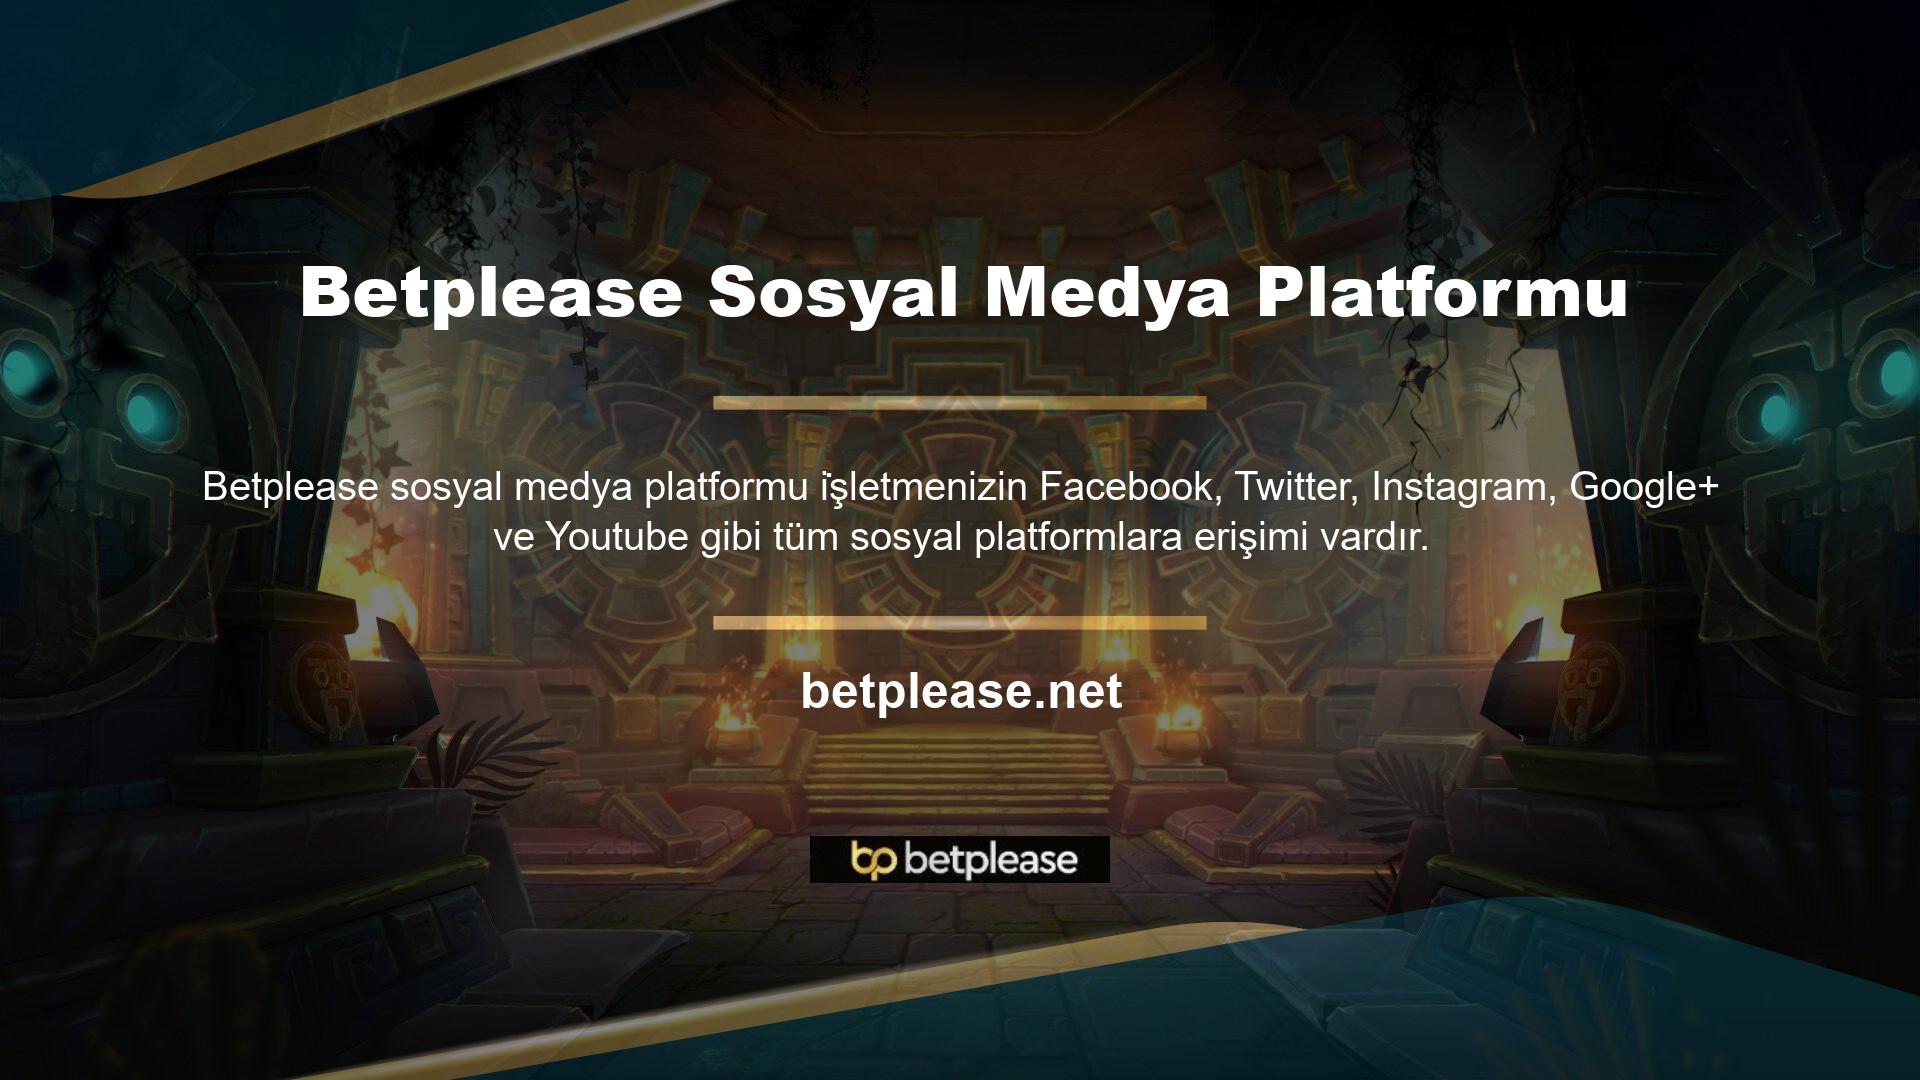 Yani Betplease sosyal platformlardaki hesaplarıyla oldukça popüler ve aktif